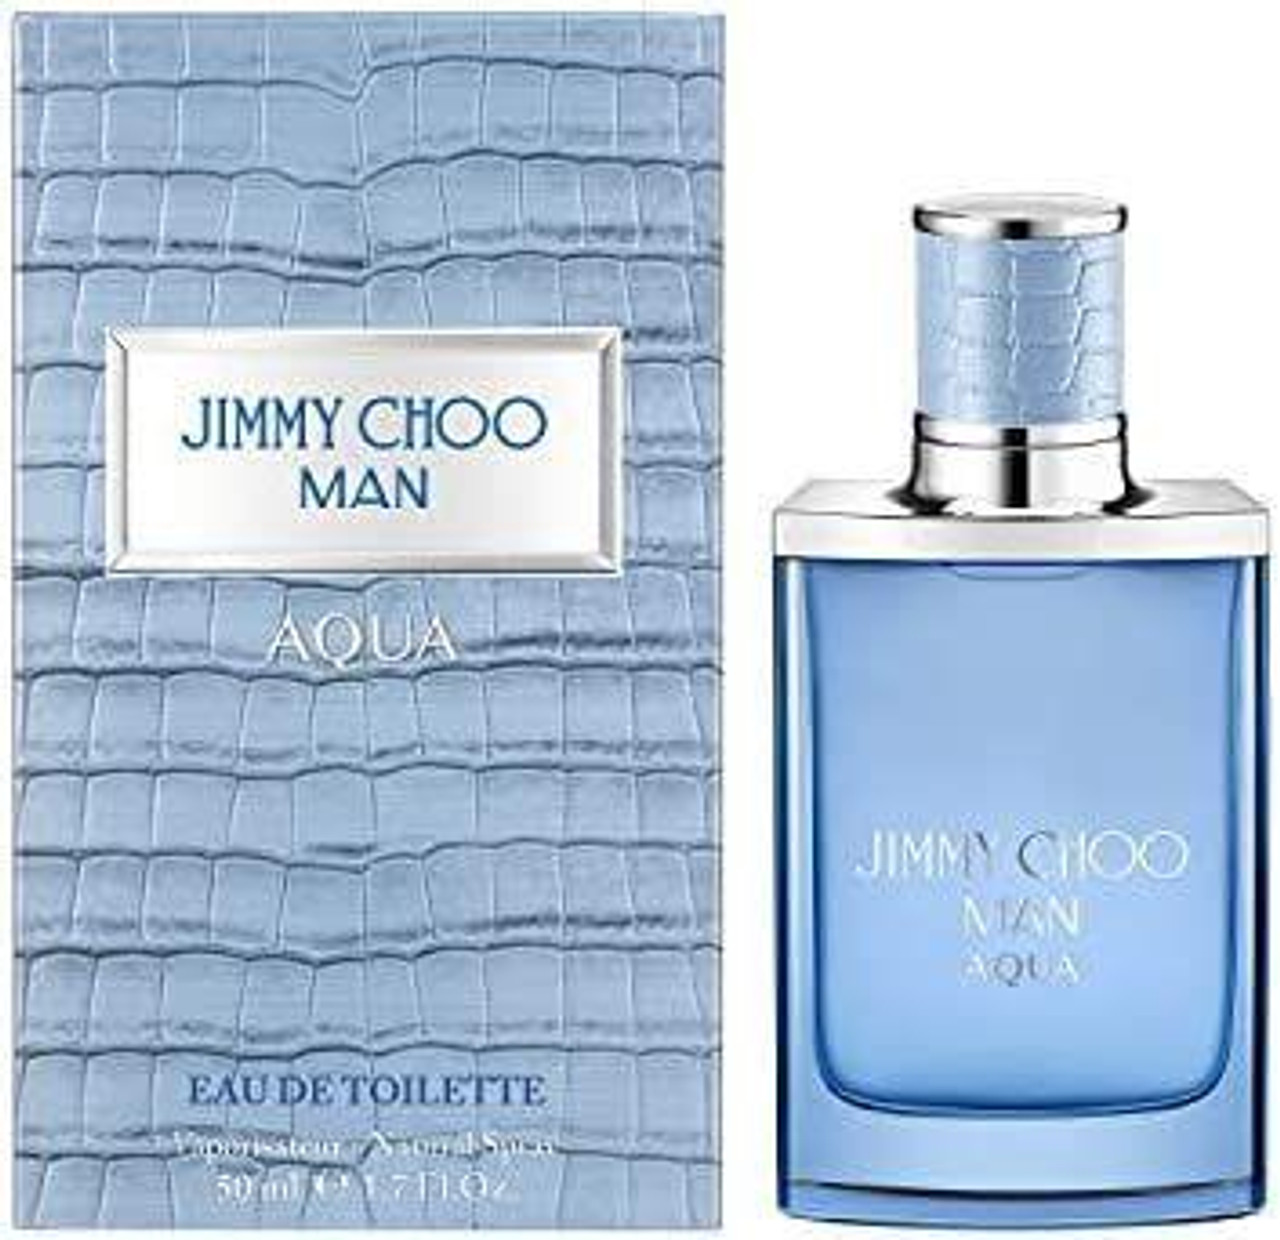 Jimmy Choo Man Aqua 3.3oz cologne spray